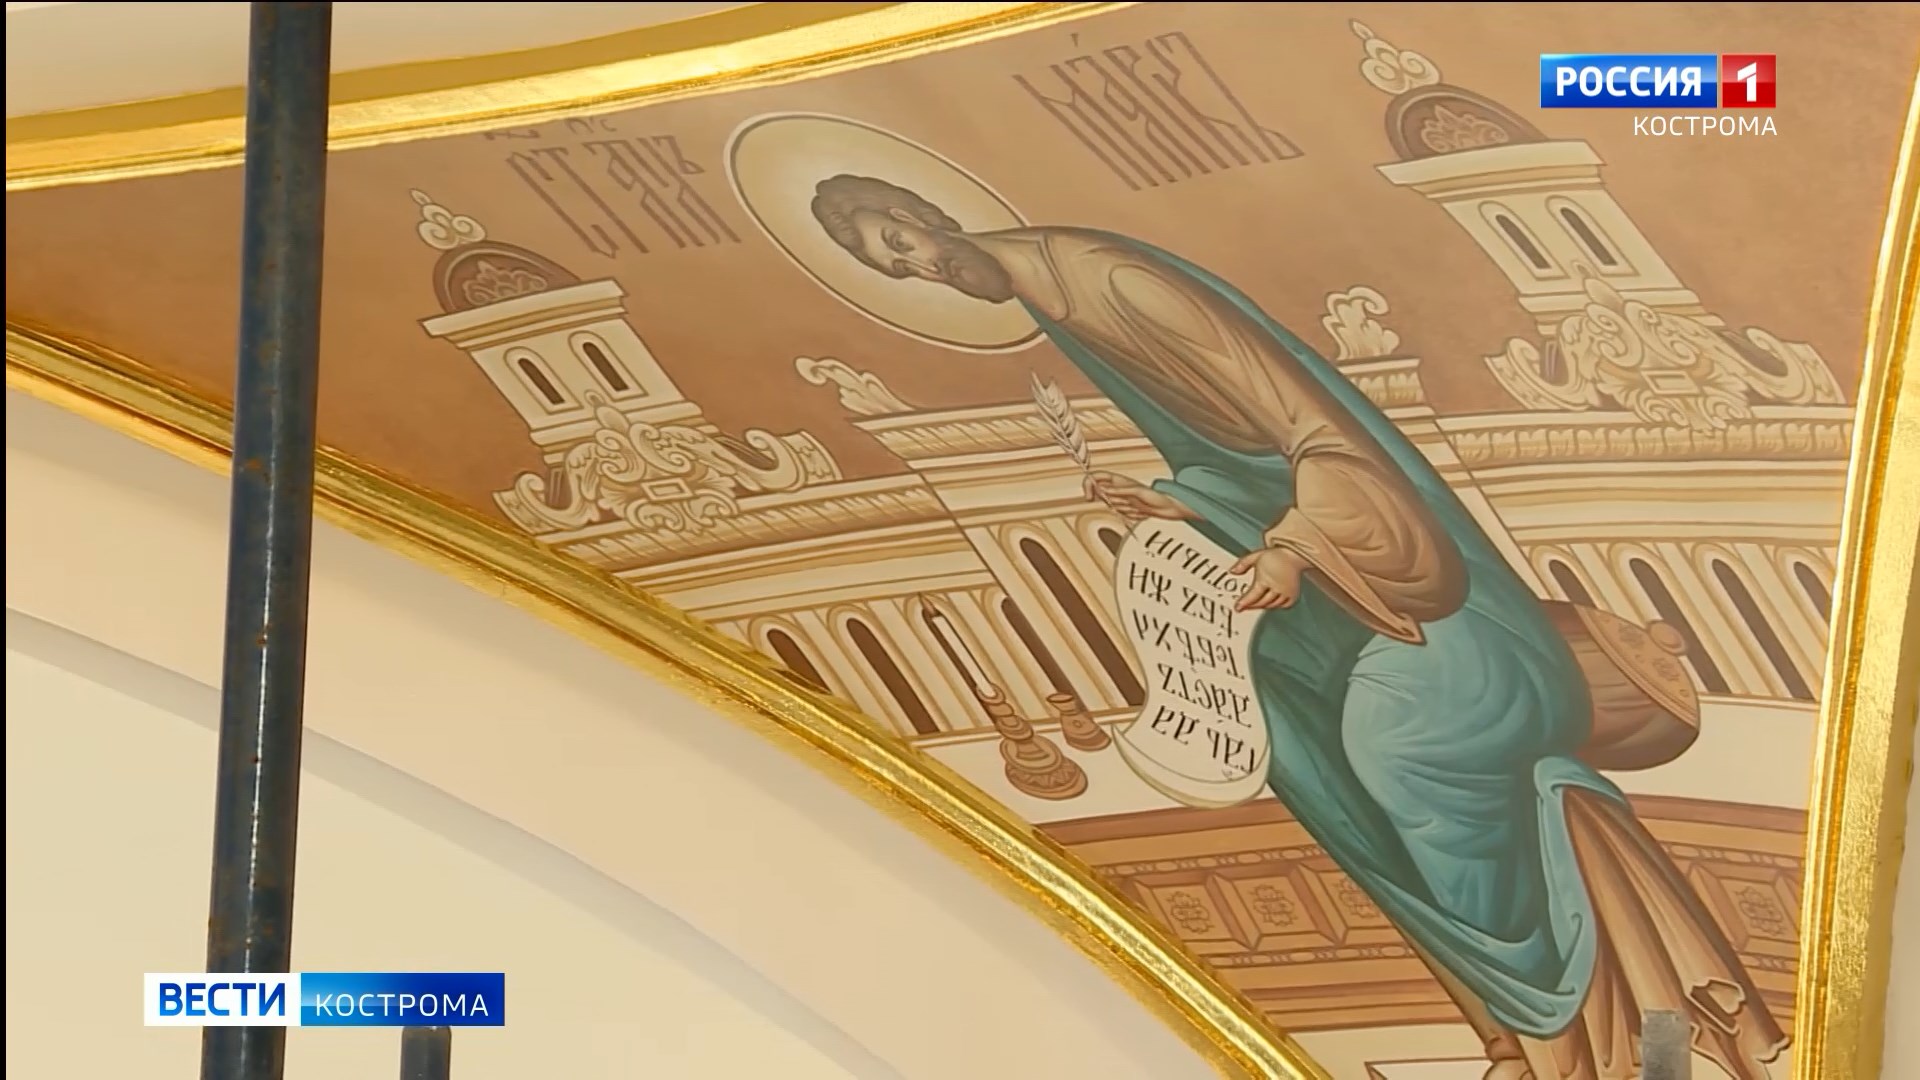 По заветам местных мастеров: московские художники завершили роспись Костромского кремля